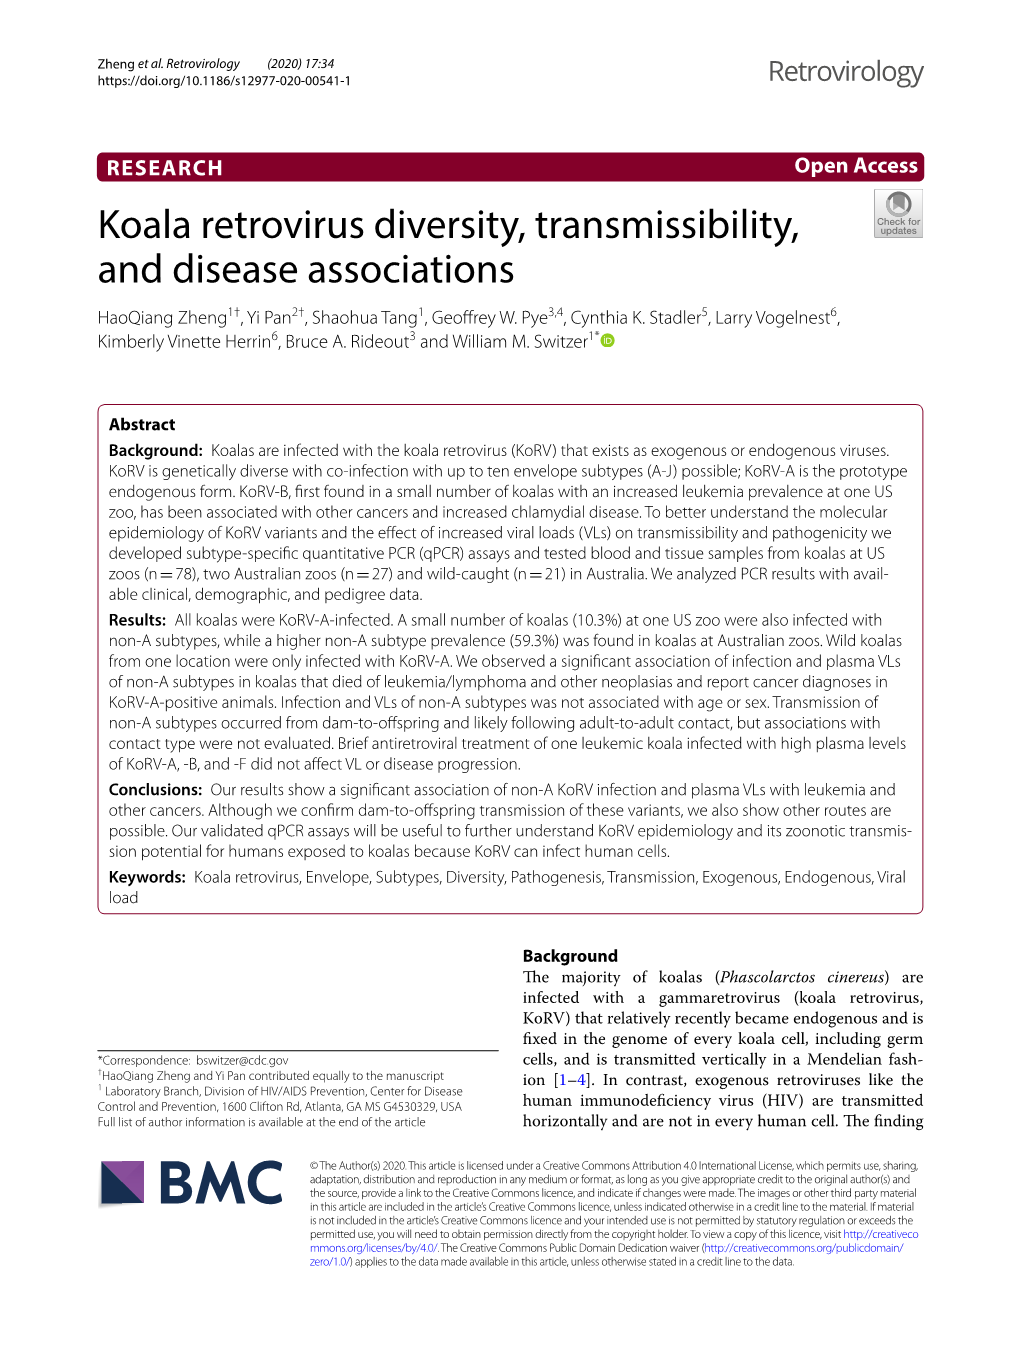 Koala Retrovirus Diversity, Transmissibility, and Disease Associations Haoqiang Zheng1†, Yi Pan2†, Shaohua Tang1, Geofrey W